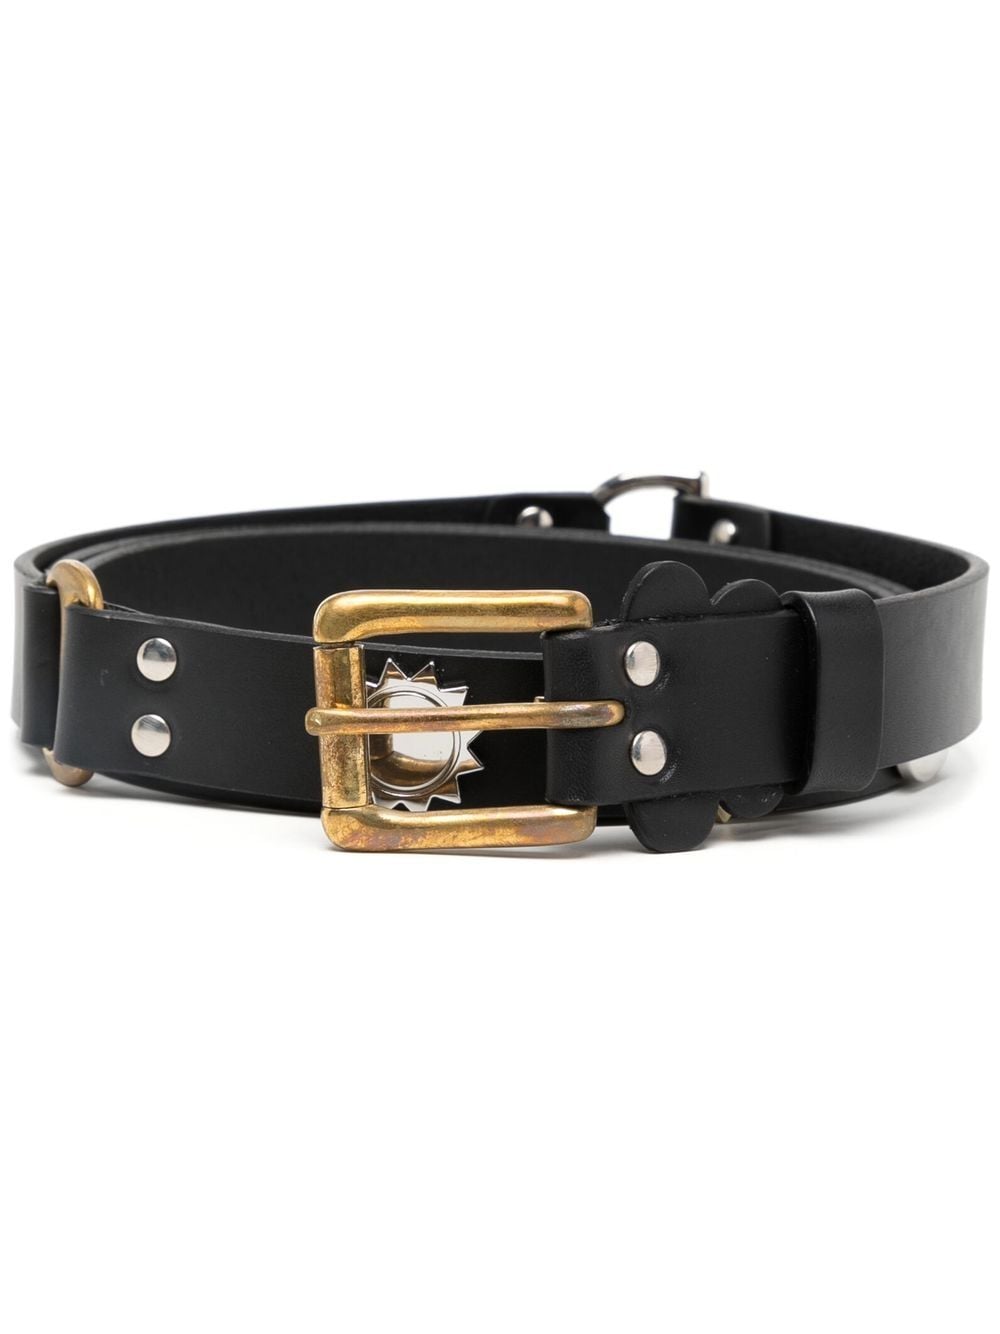 embellished leather belt